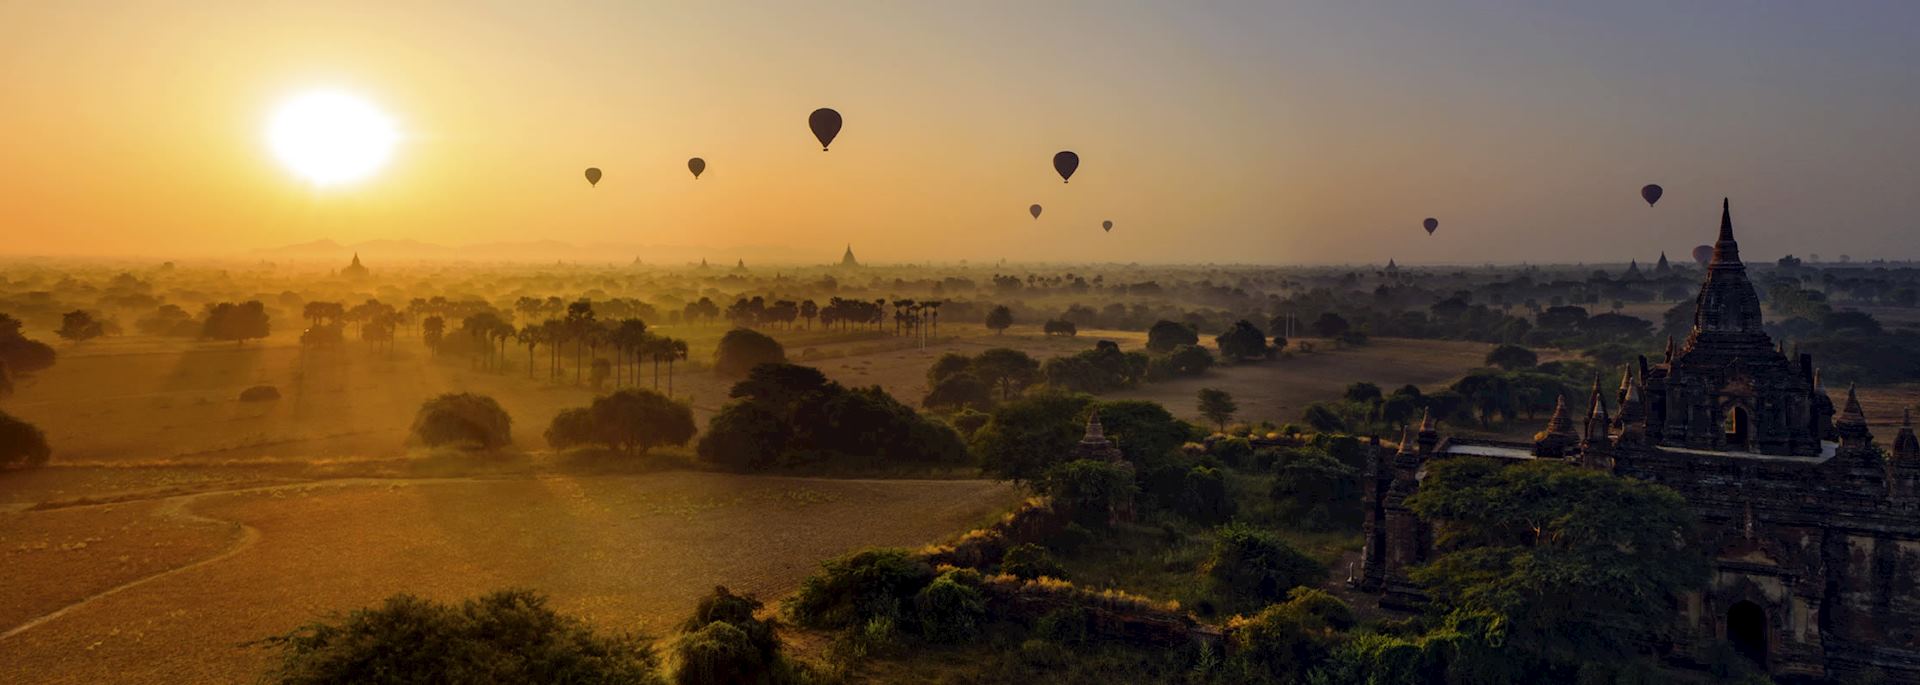 Balloon's over Bagan